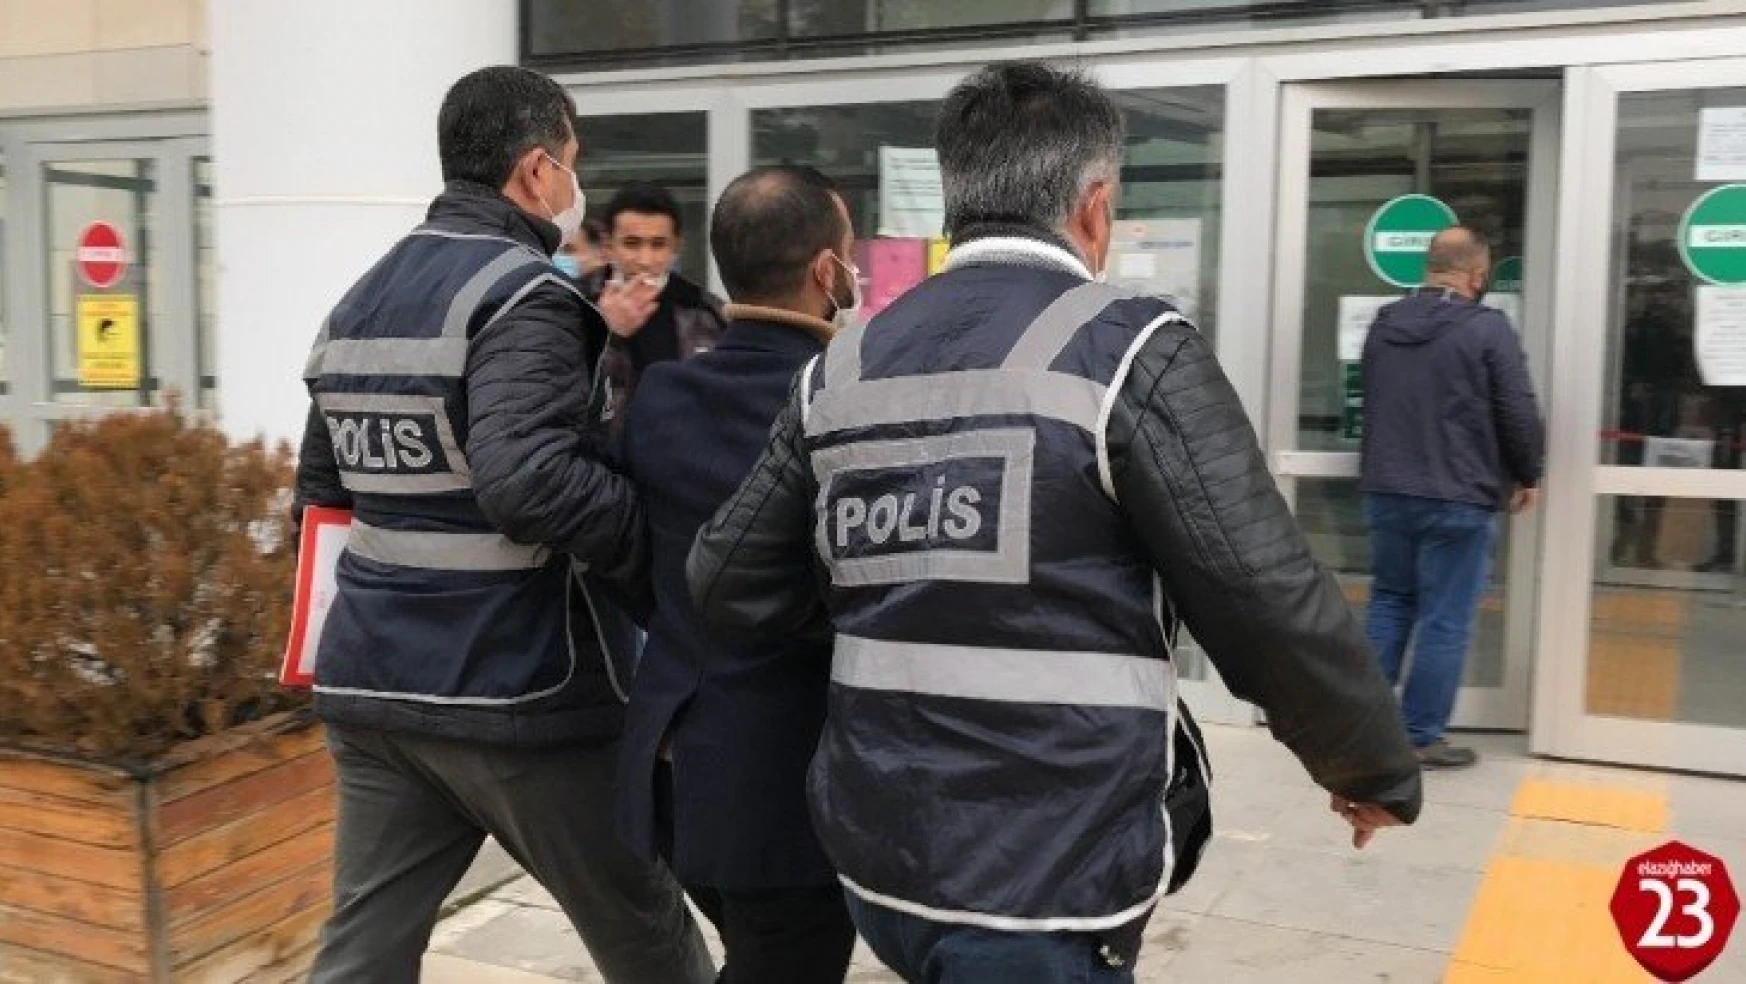 Elazığ'da silahla yaralama olayına karışan şüpheli tutuklandı